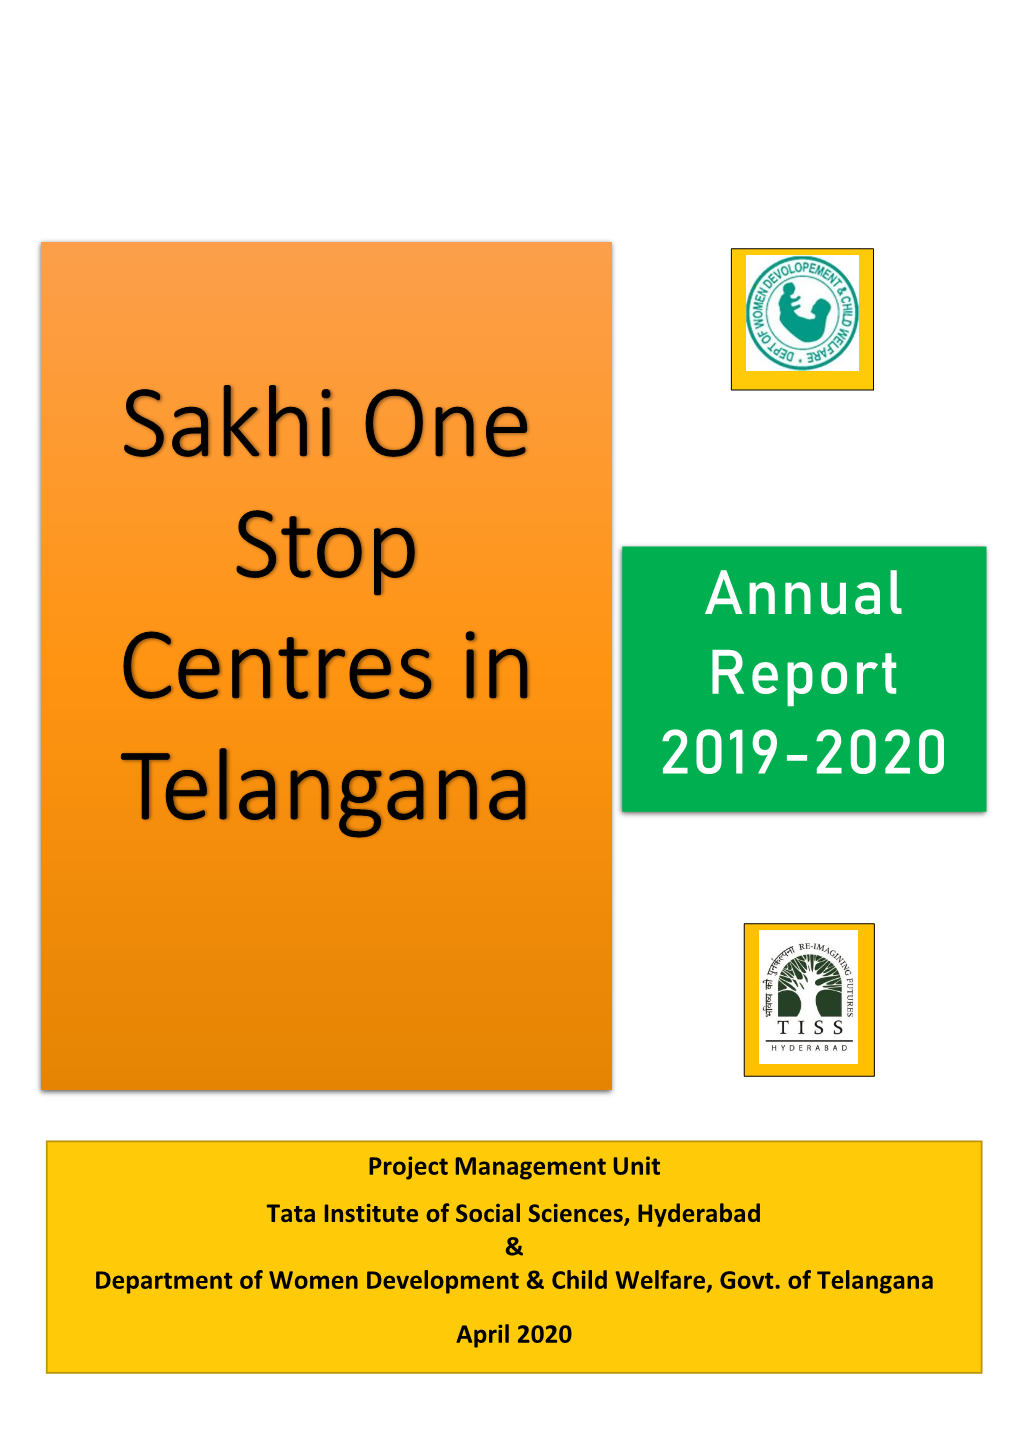 Sakhi One Stop Centres in Telangana